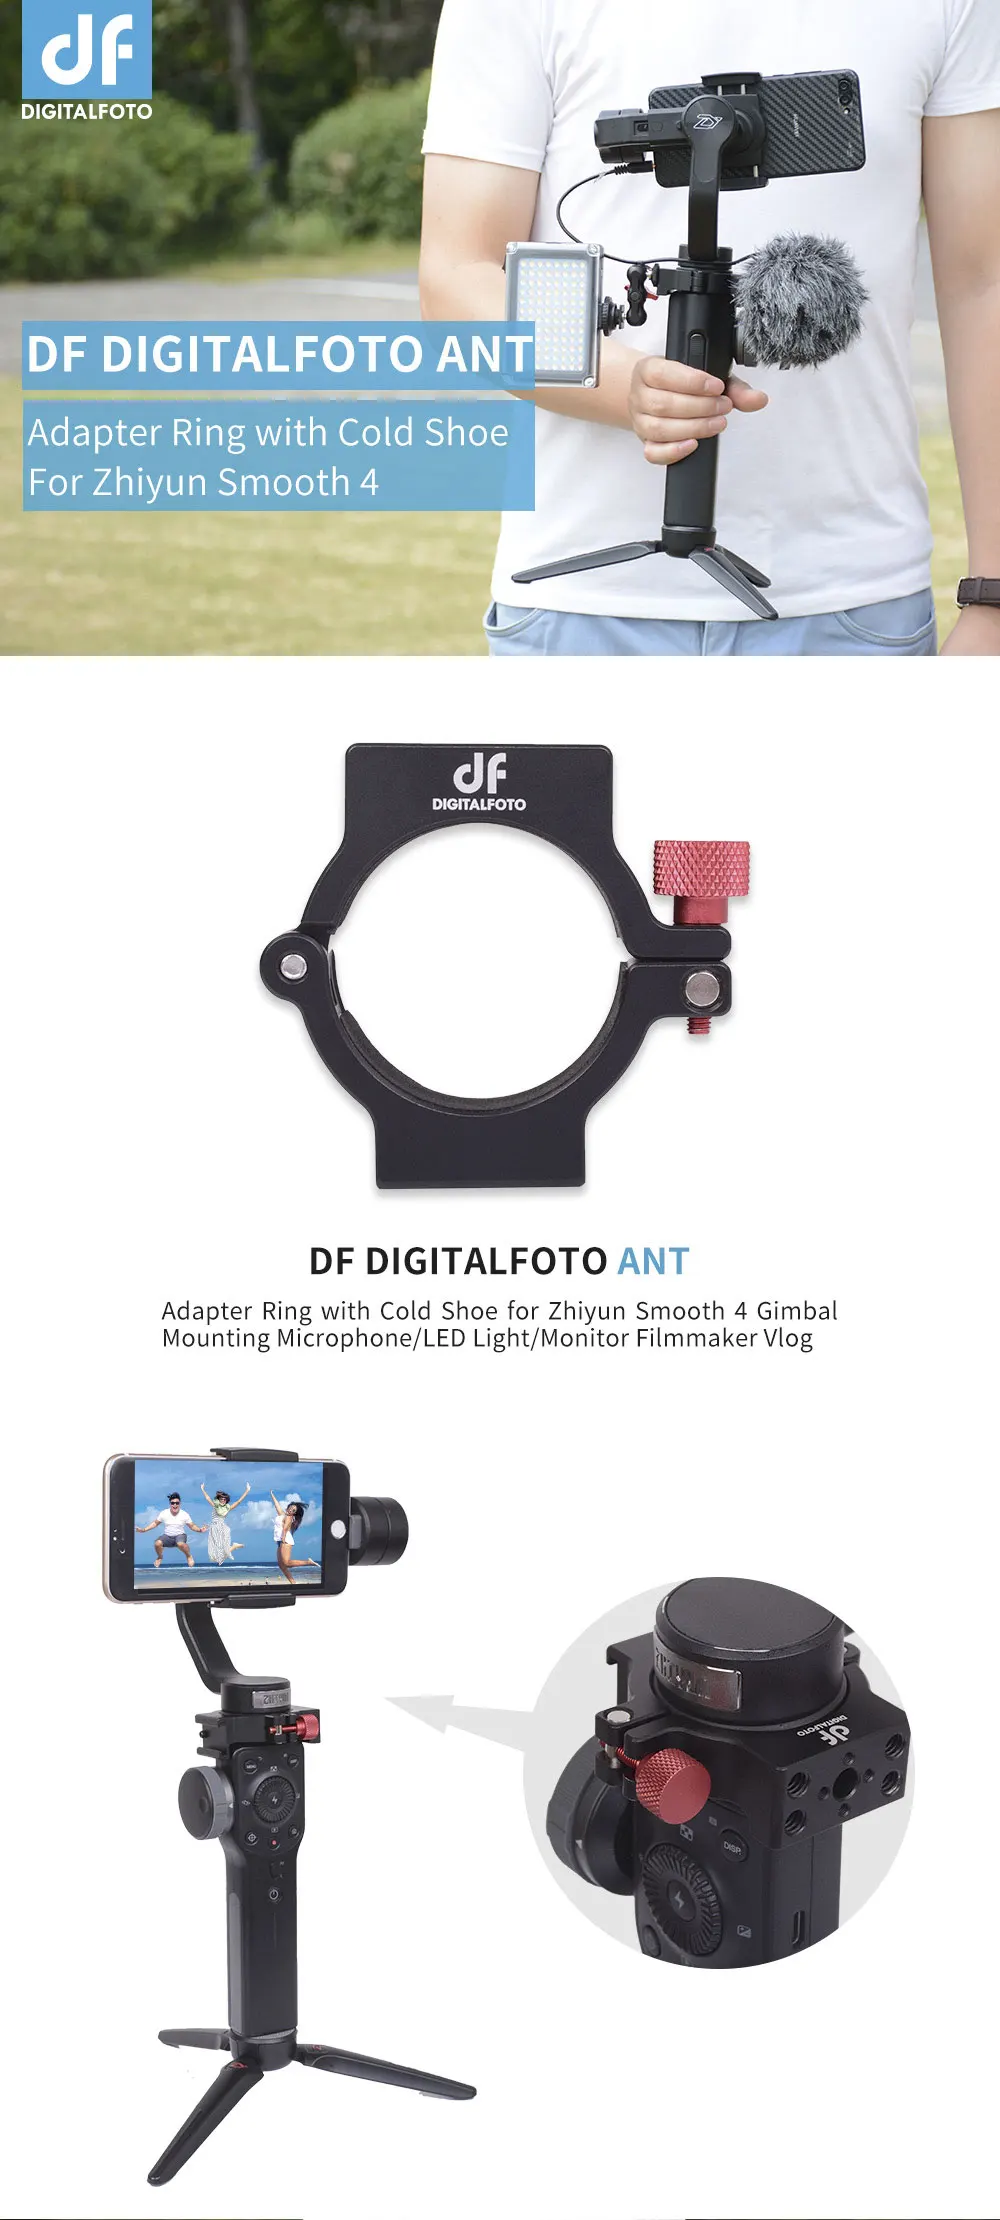 DIGITALFOTO ANT крепление для микрофона зажим Холодный башмак адаптер кольцо compitiable Zhiyun Smooth 4 3-осевой карданный стабилизатор для крепления аксессуары для микрофона